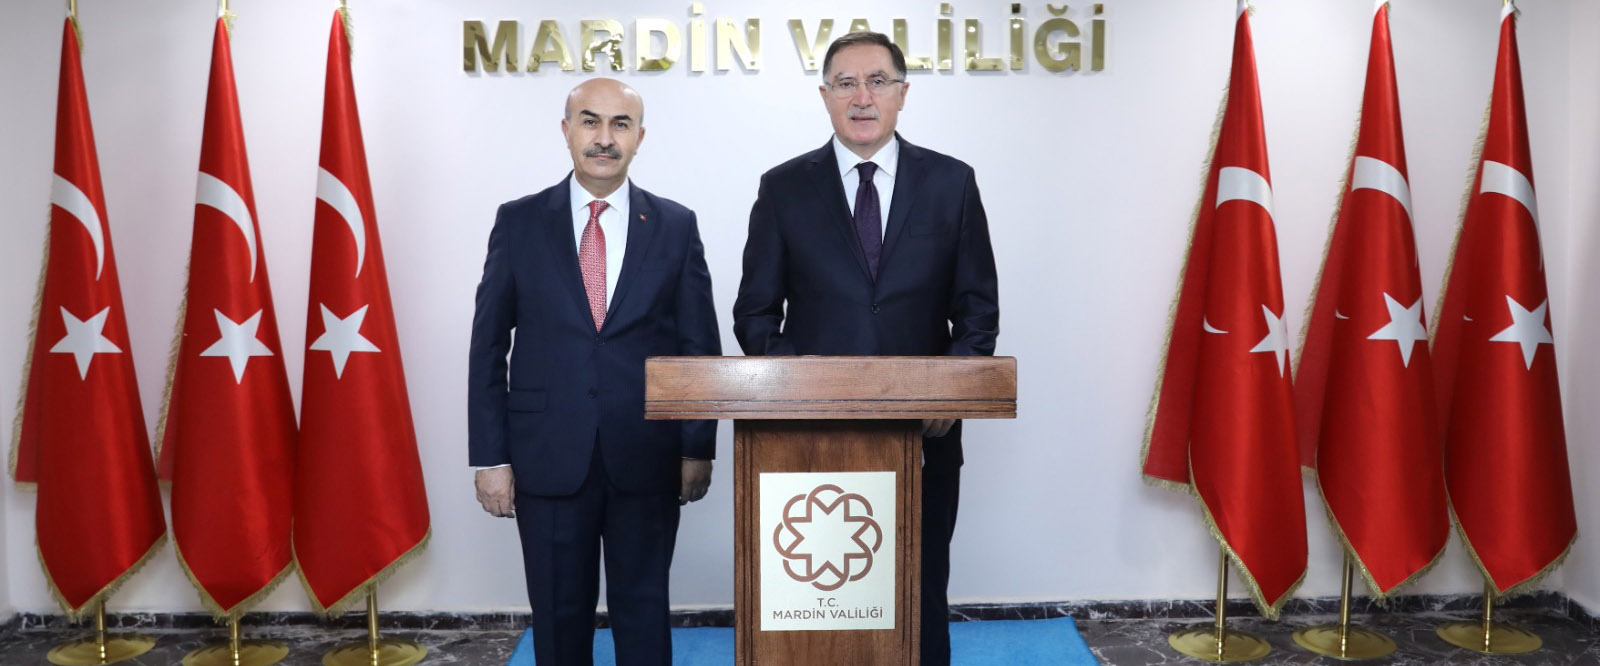 Kamu Başdenetçisi Şeref Malkoç Mardin Valisi Demirtaş ile görüştü